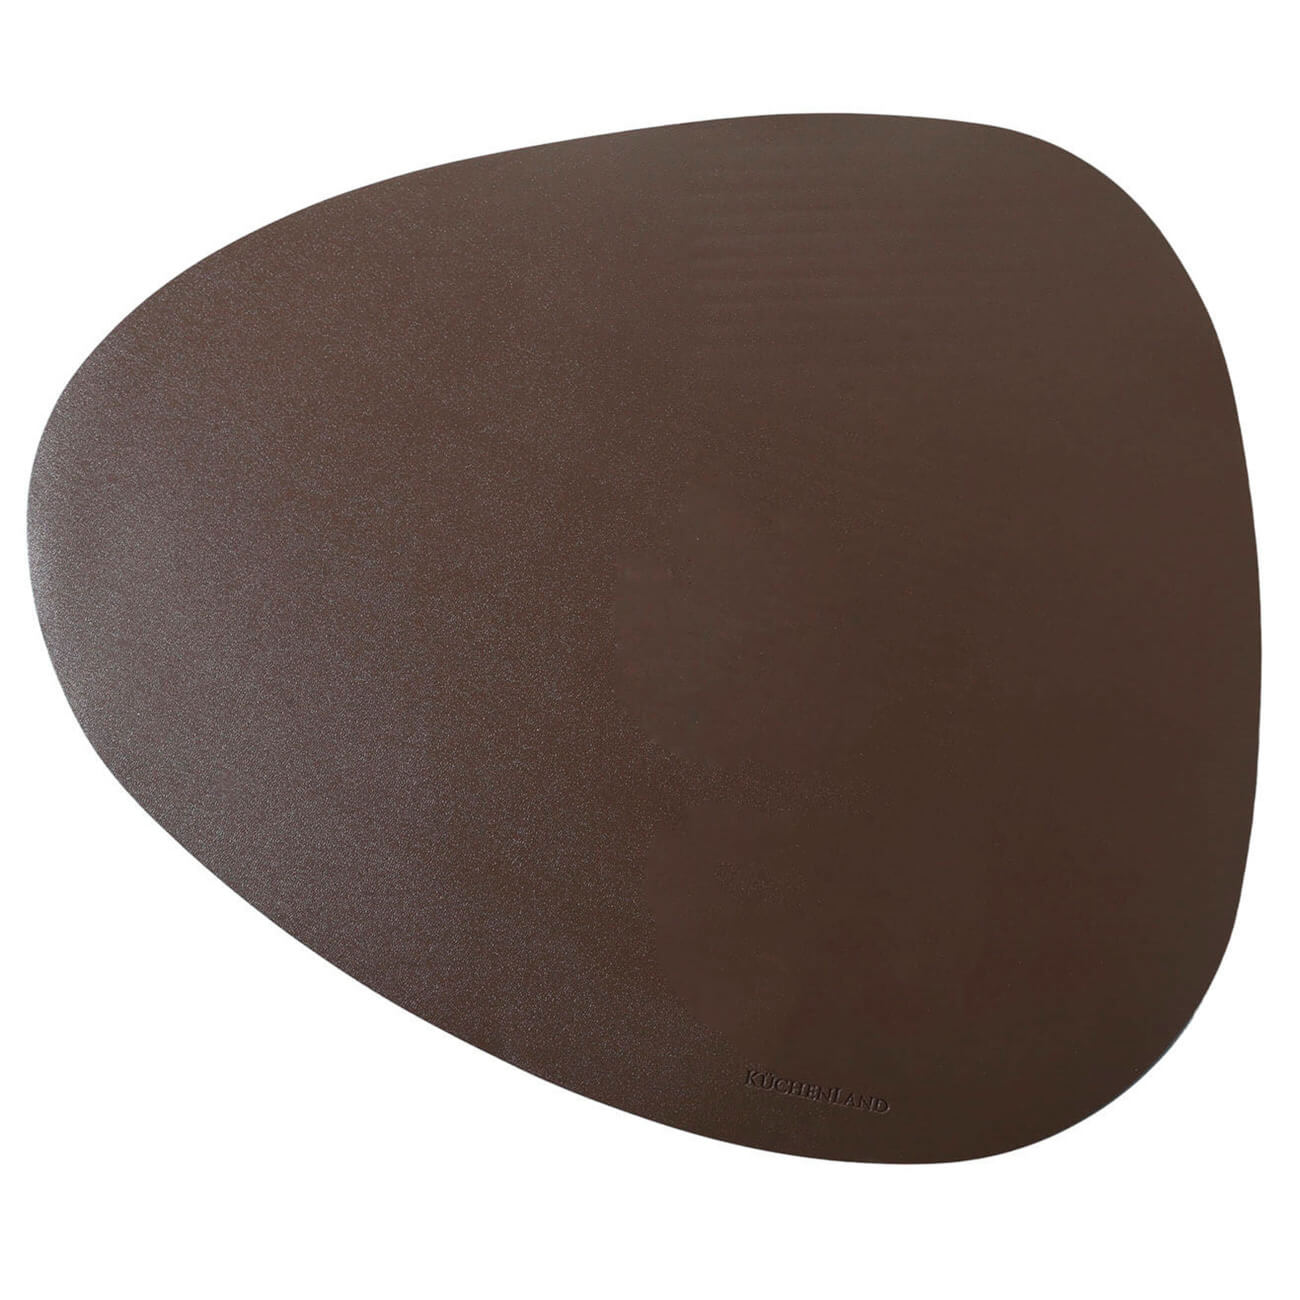 Салфетка под приборы, 37x45 см, ПВХ, фигурная, коричневая, Rock изображение № 1